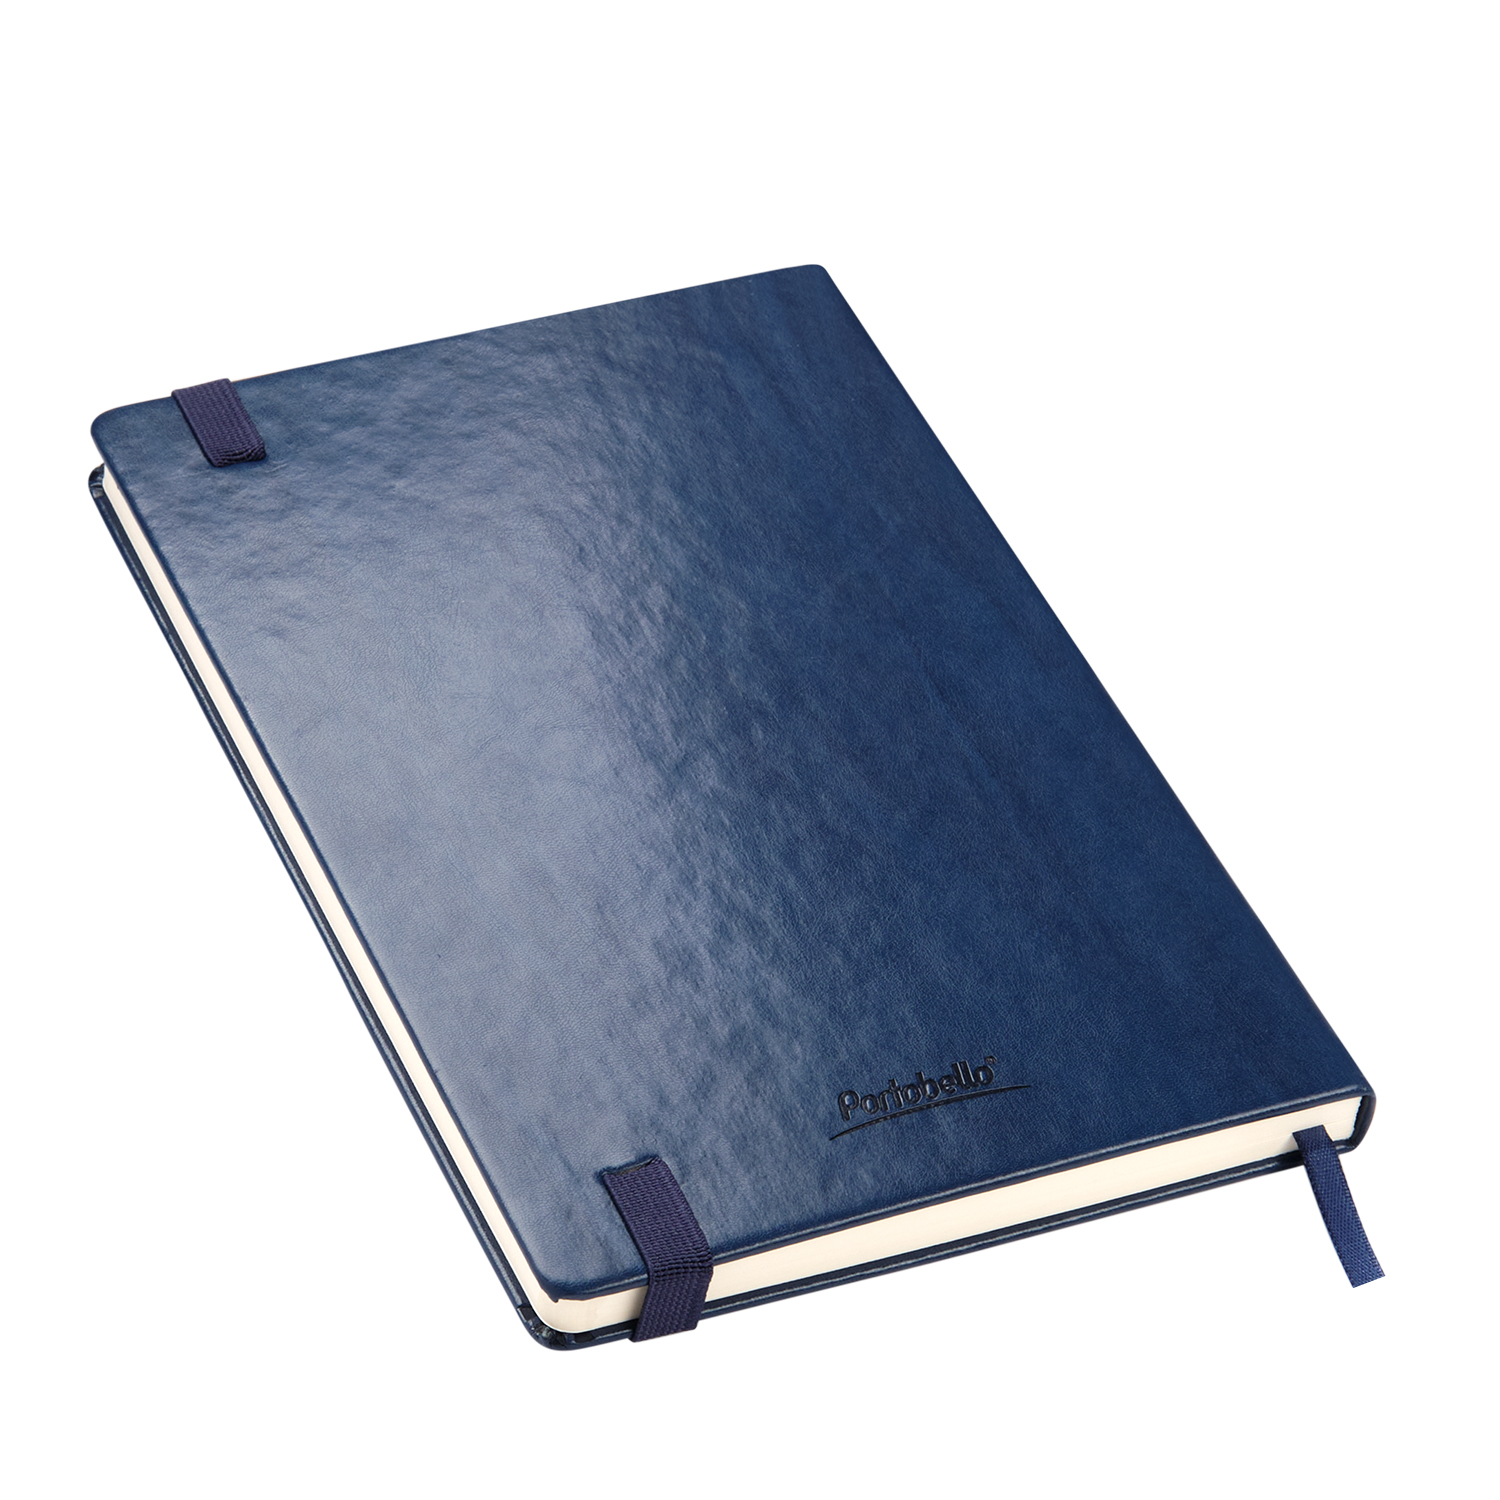 Ежедневник недатированный Reina Btobook, синий (без упаковки, без стикера)